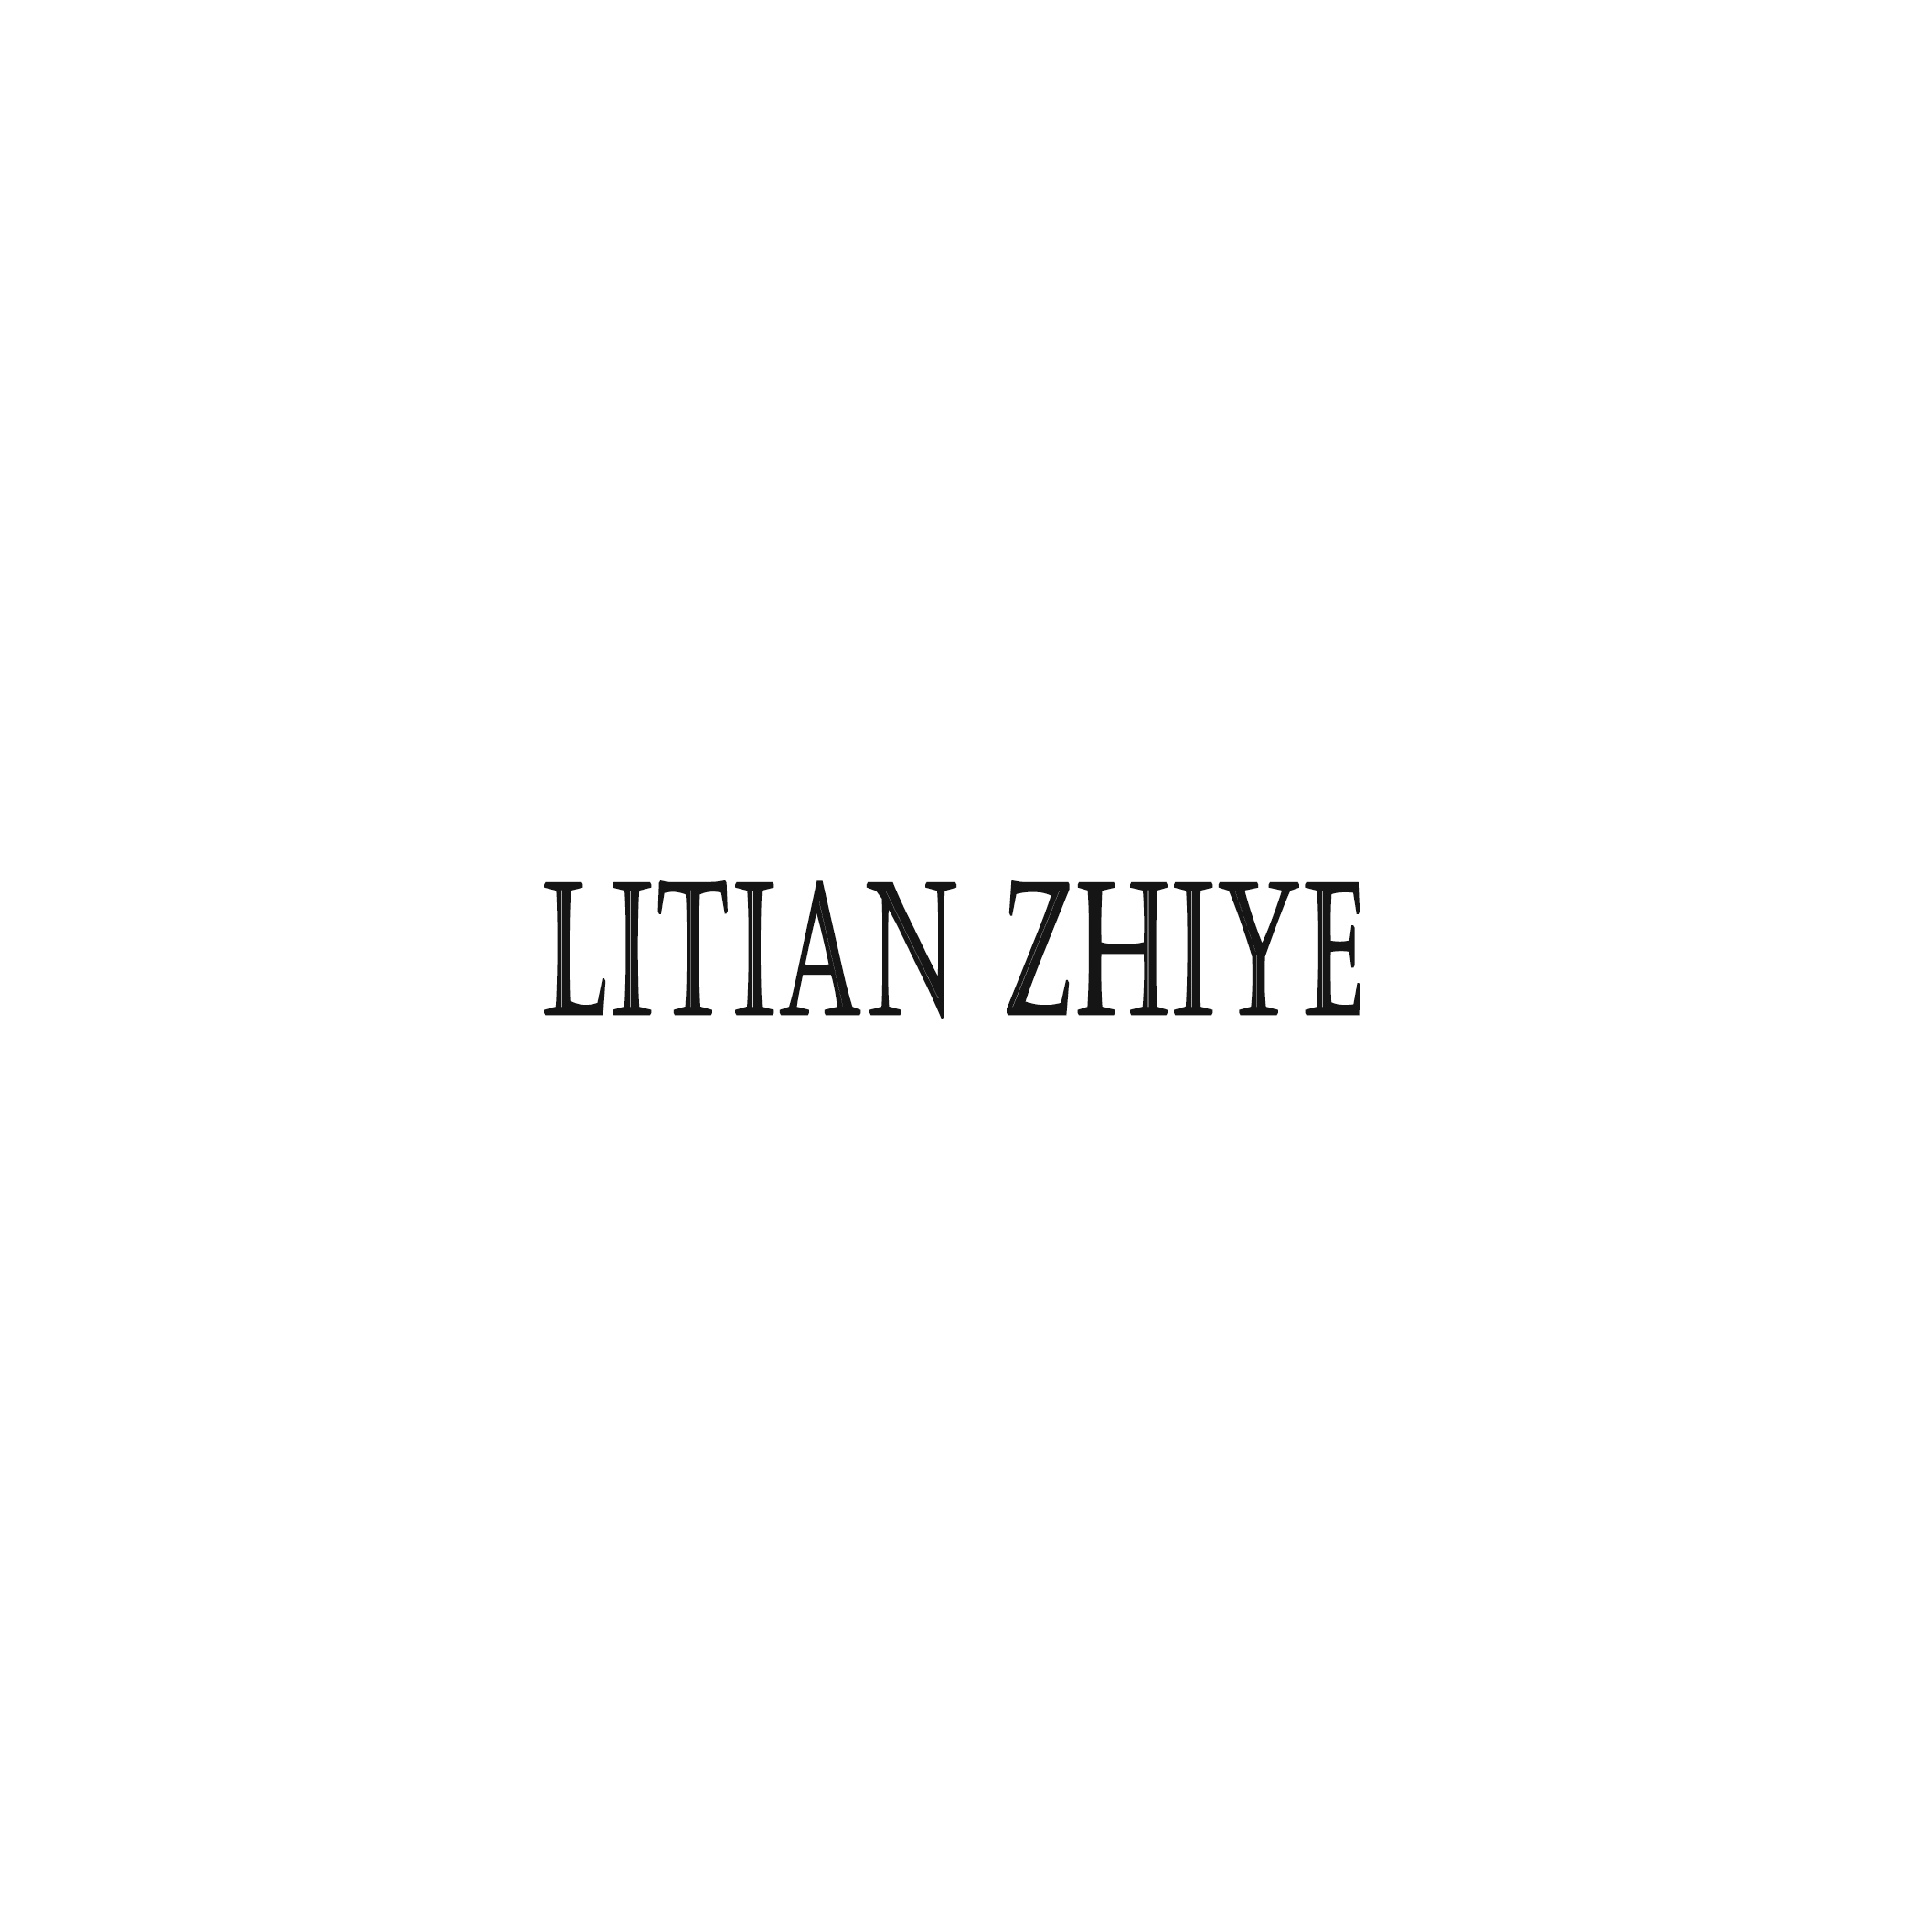 Litian Zhiye